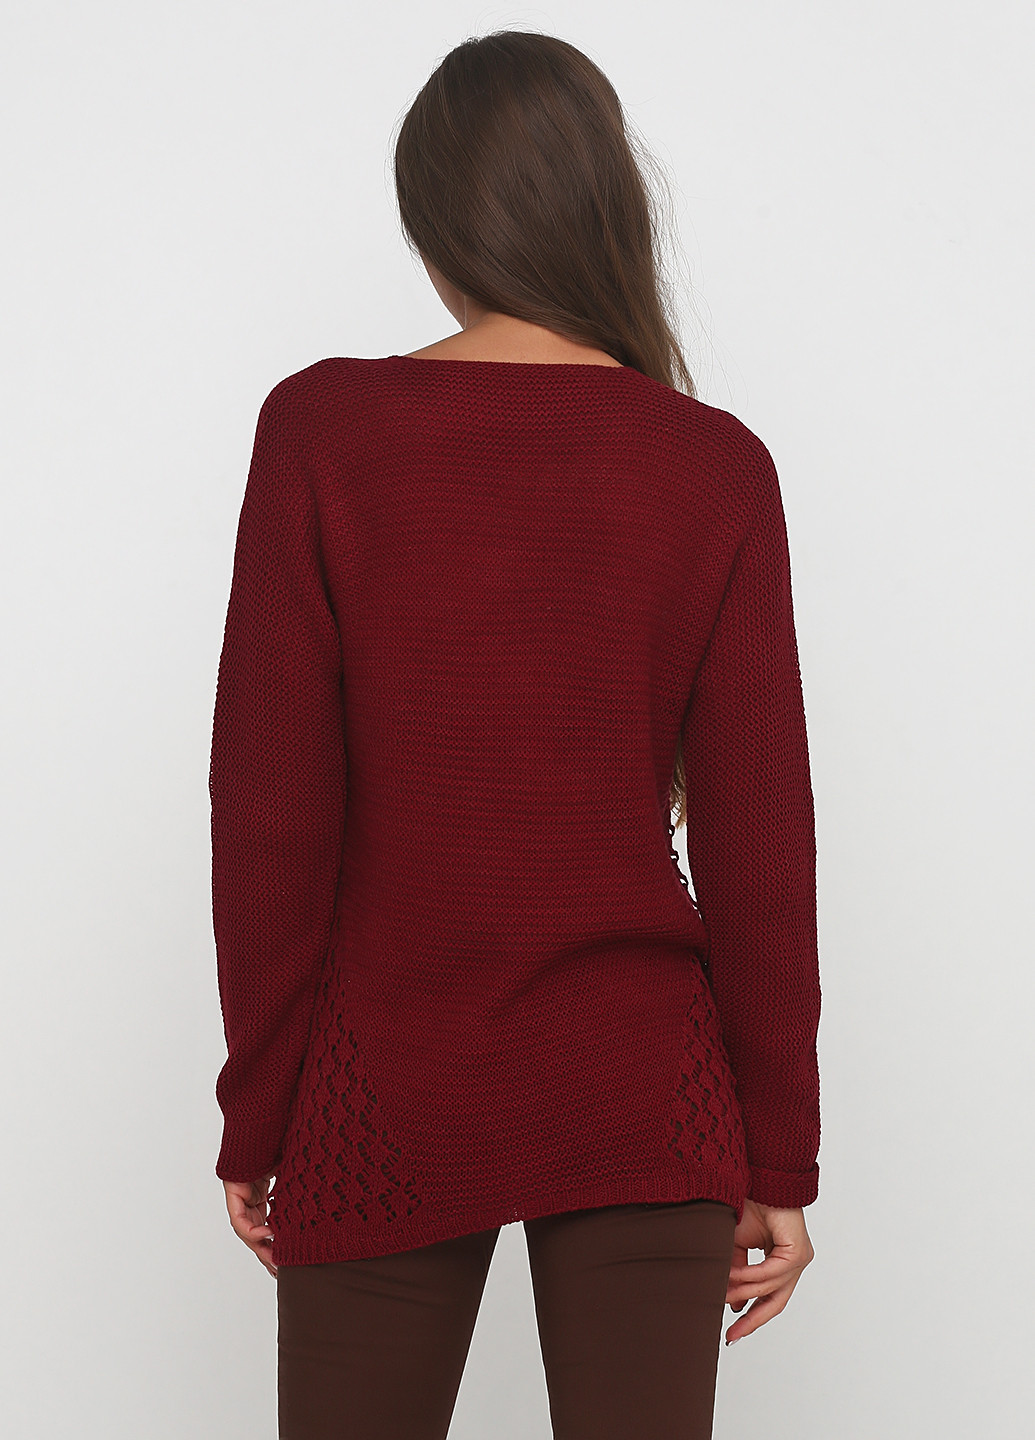 Бордовый демисезонный пуловер пуловер Divinka